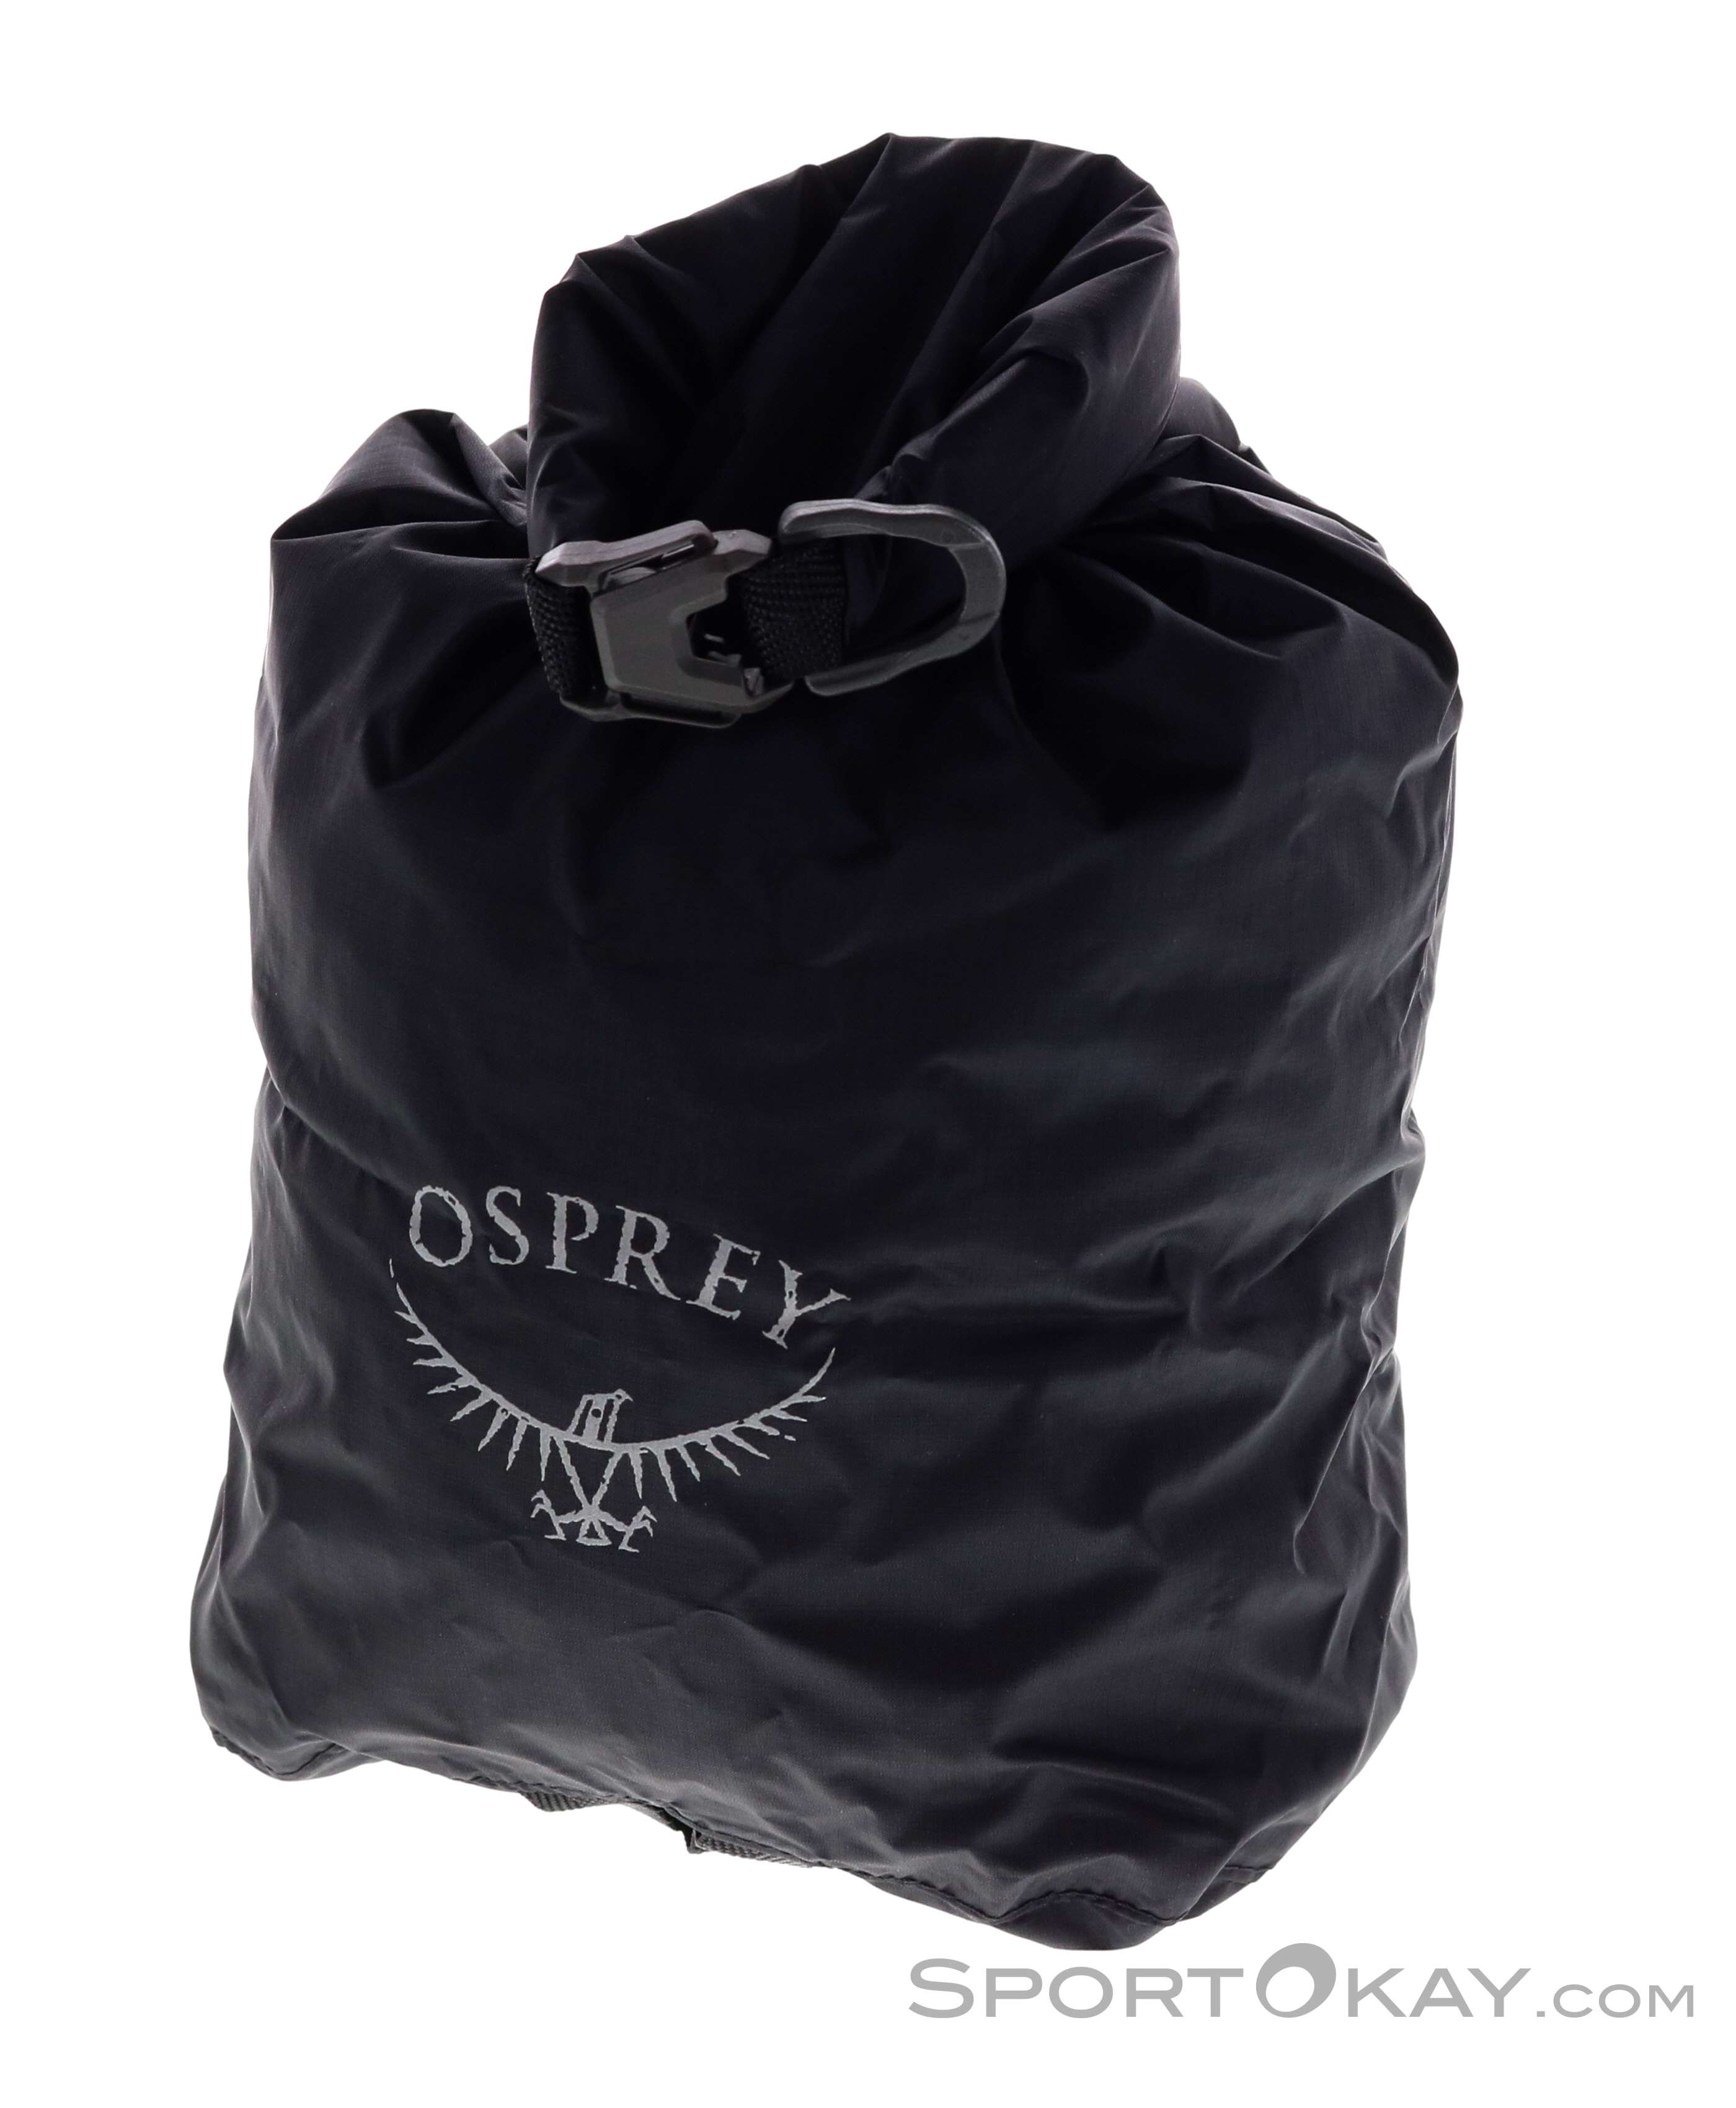 Osprey Ultralight Drysack 3l Sacchetto Asciutto - Altro - Campeggio -  Outdoor - Tutti